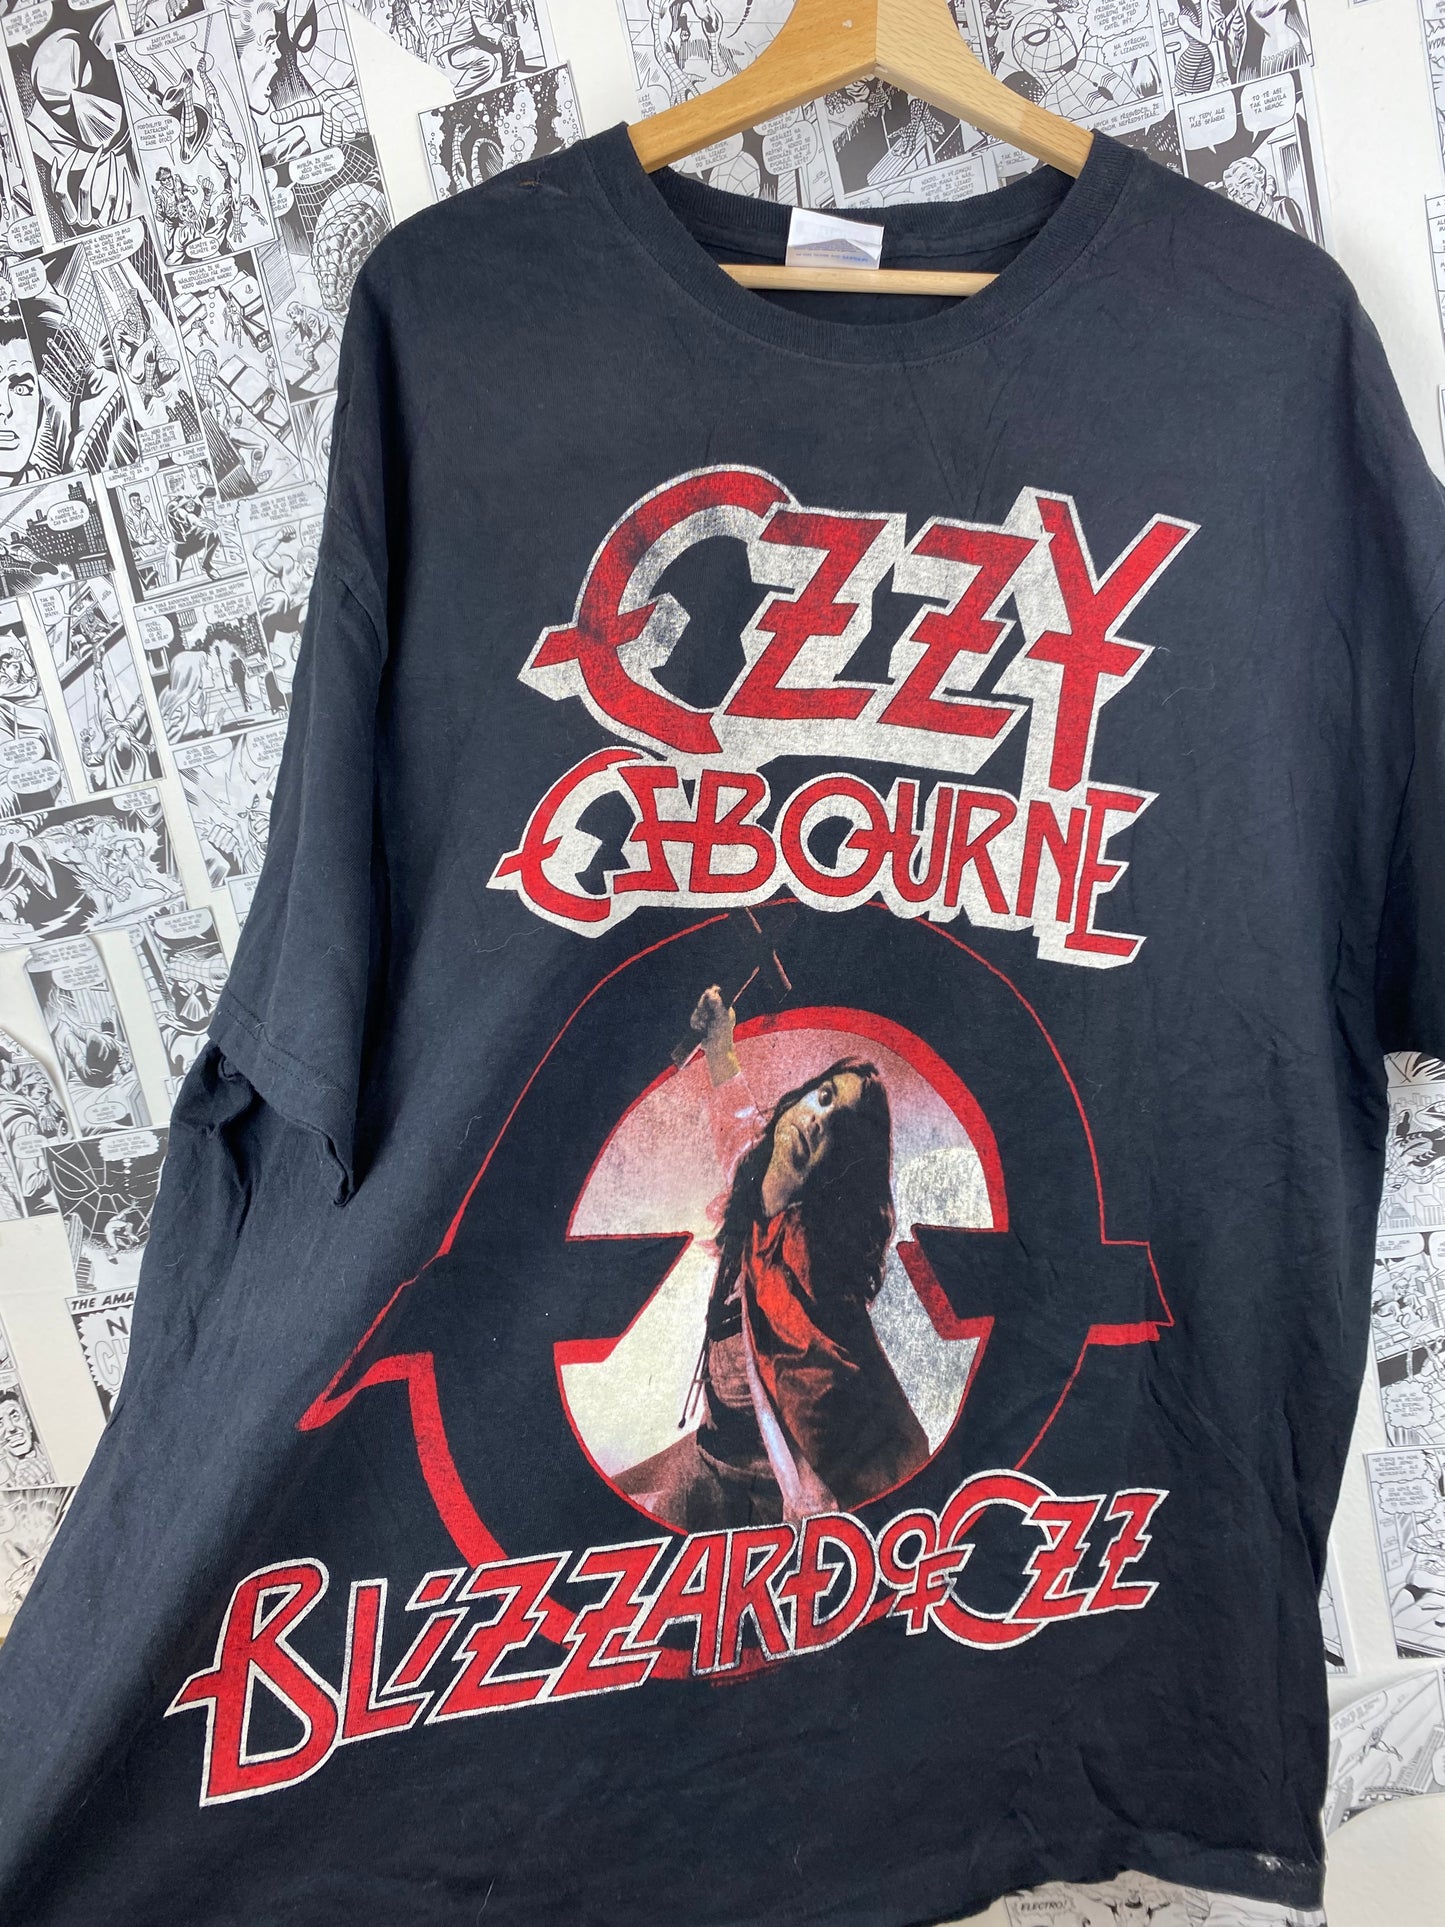 Vintage Ozzy Ozbourne “Blizzard of Ozz” t-shirt - size XXL